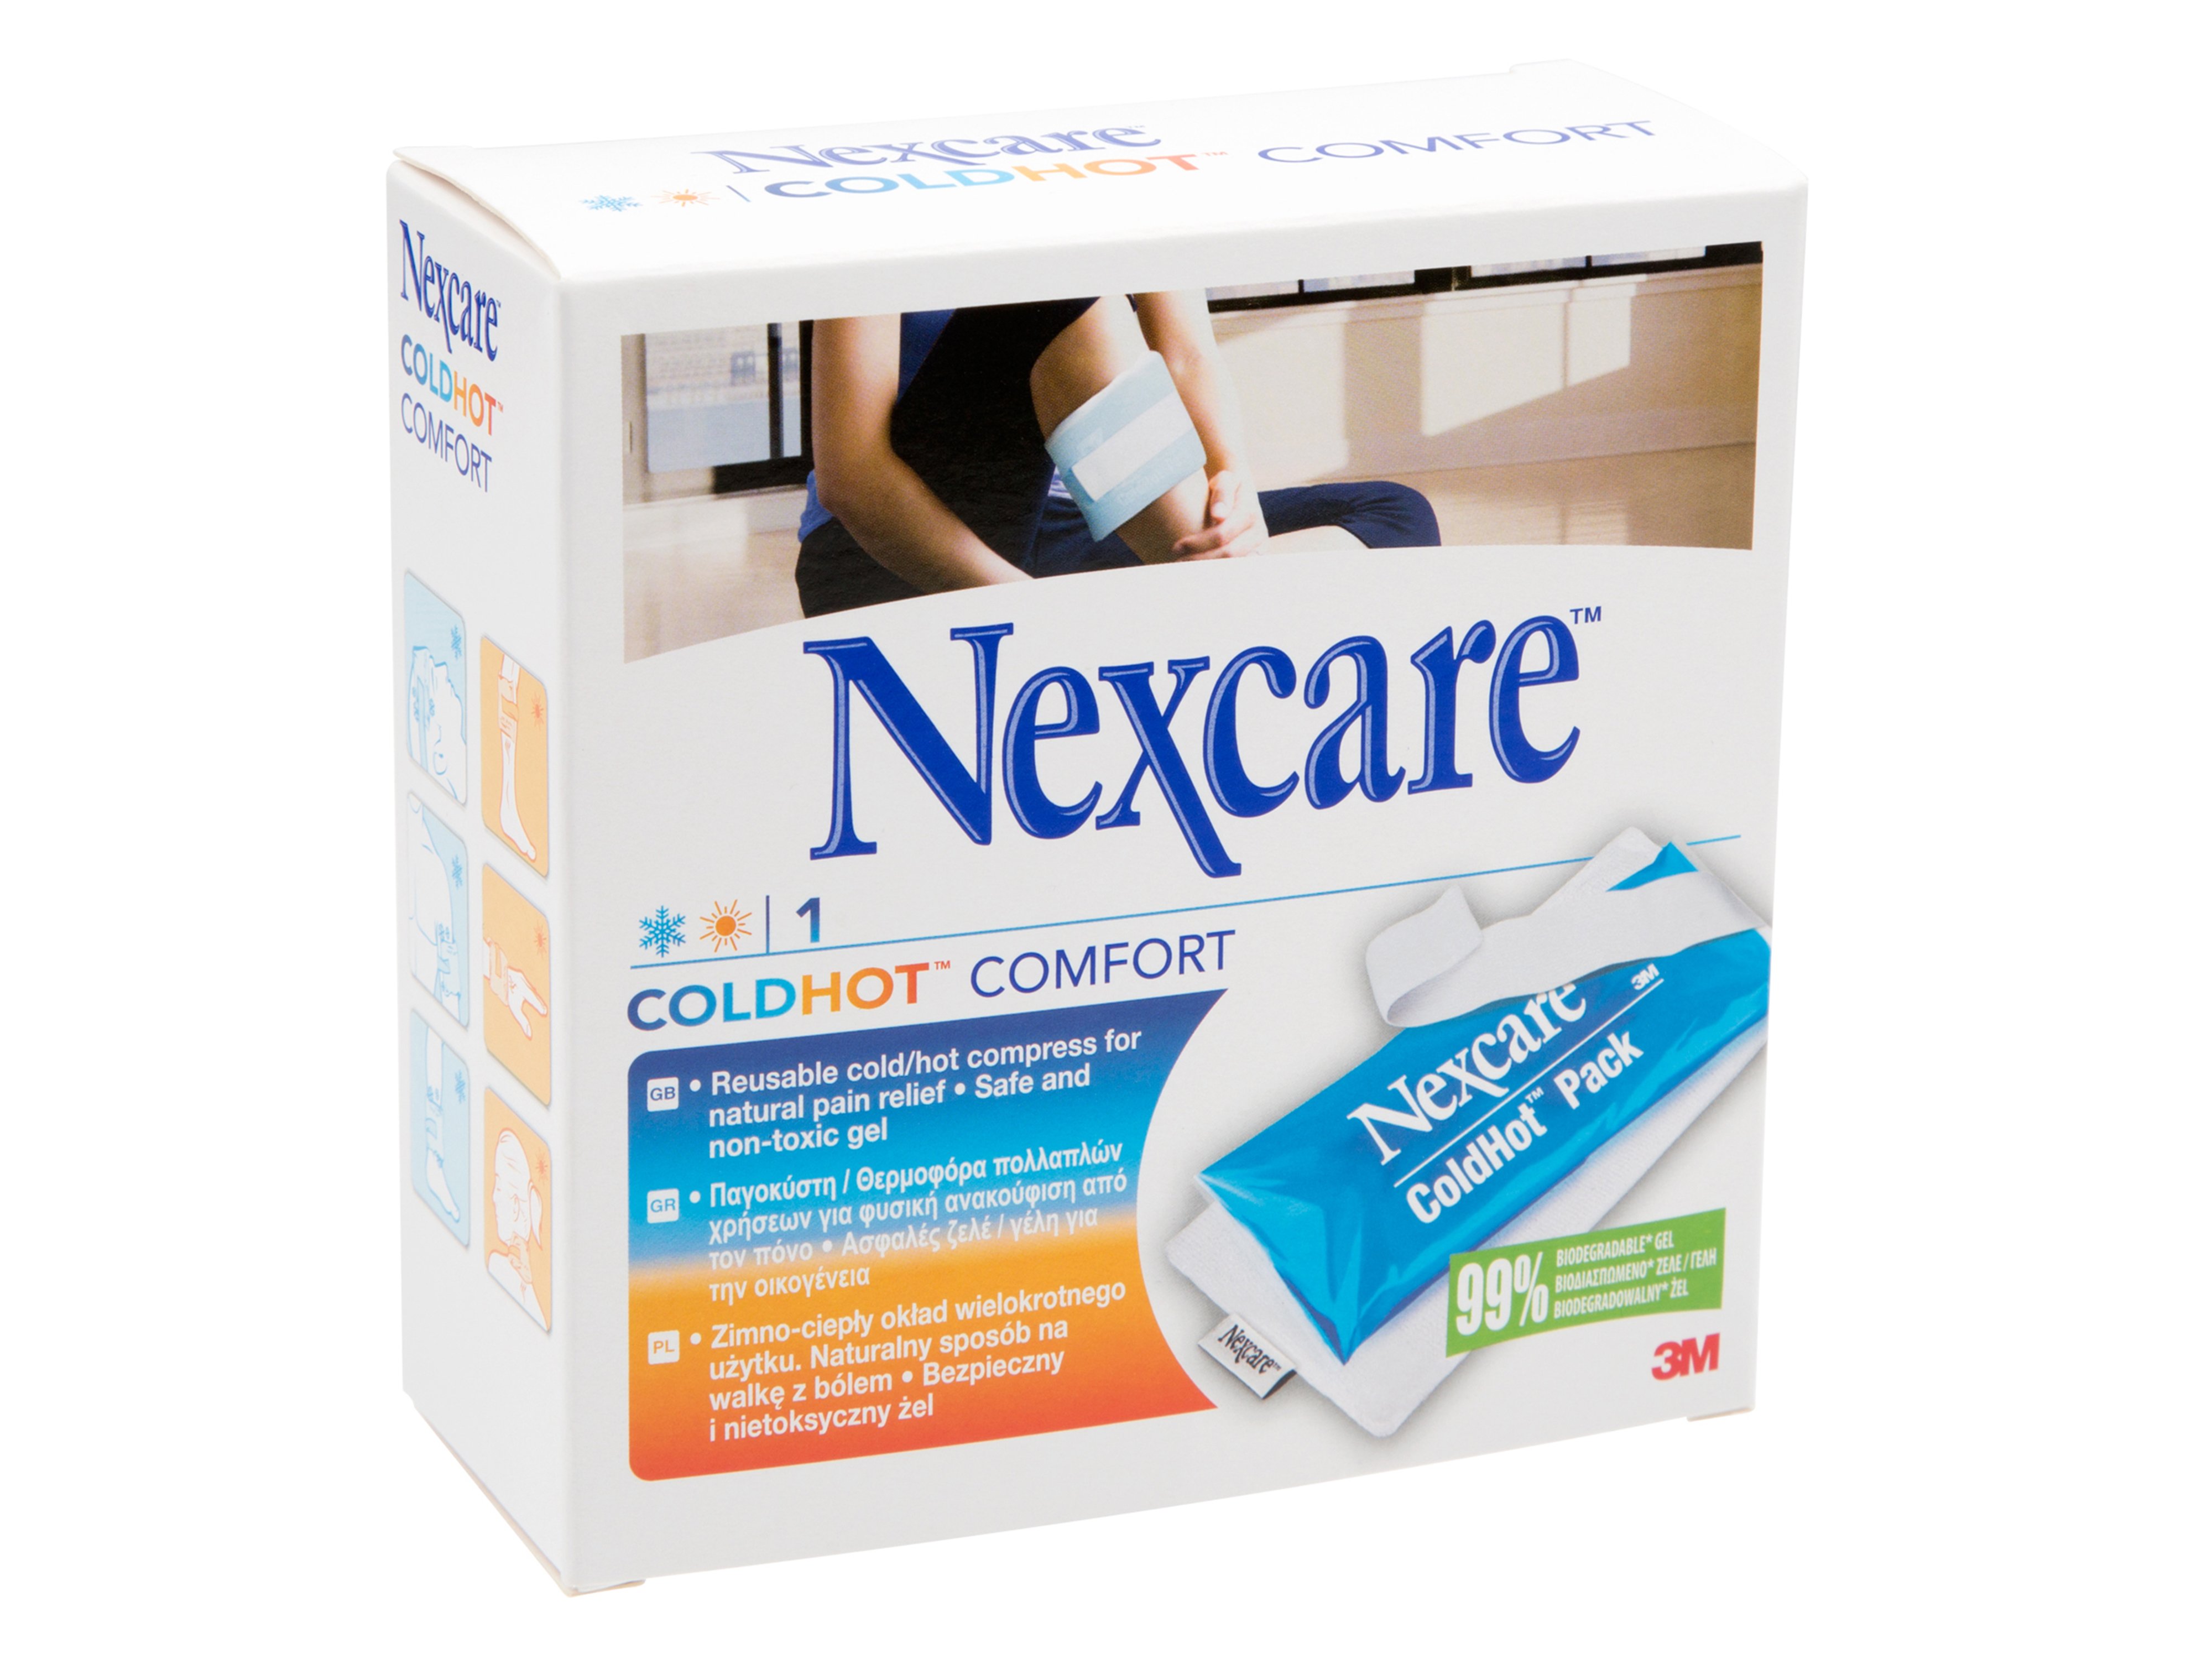 Nexcare ColdHot comfort kulde & varme, 1 stk